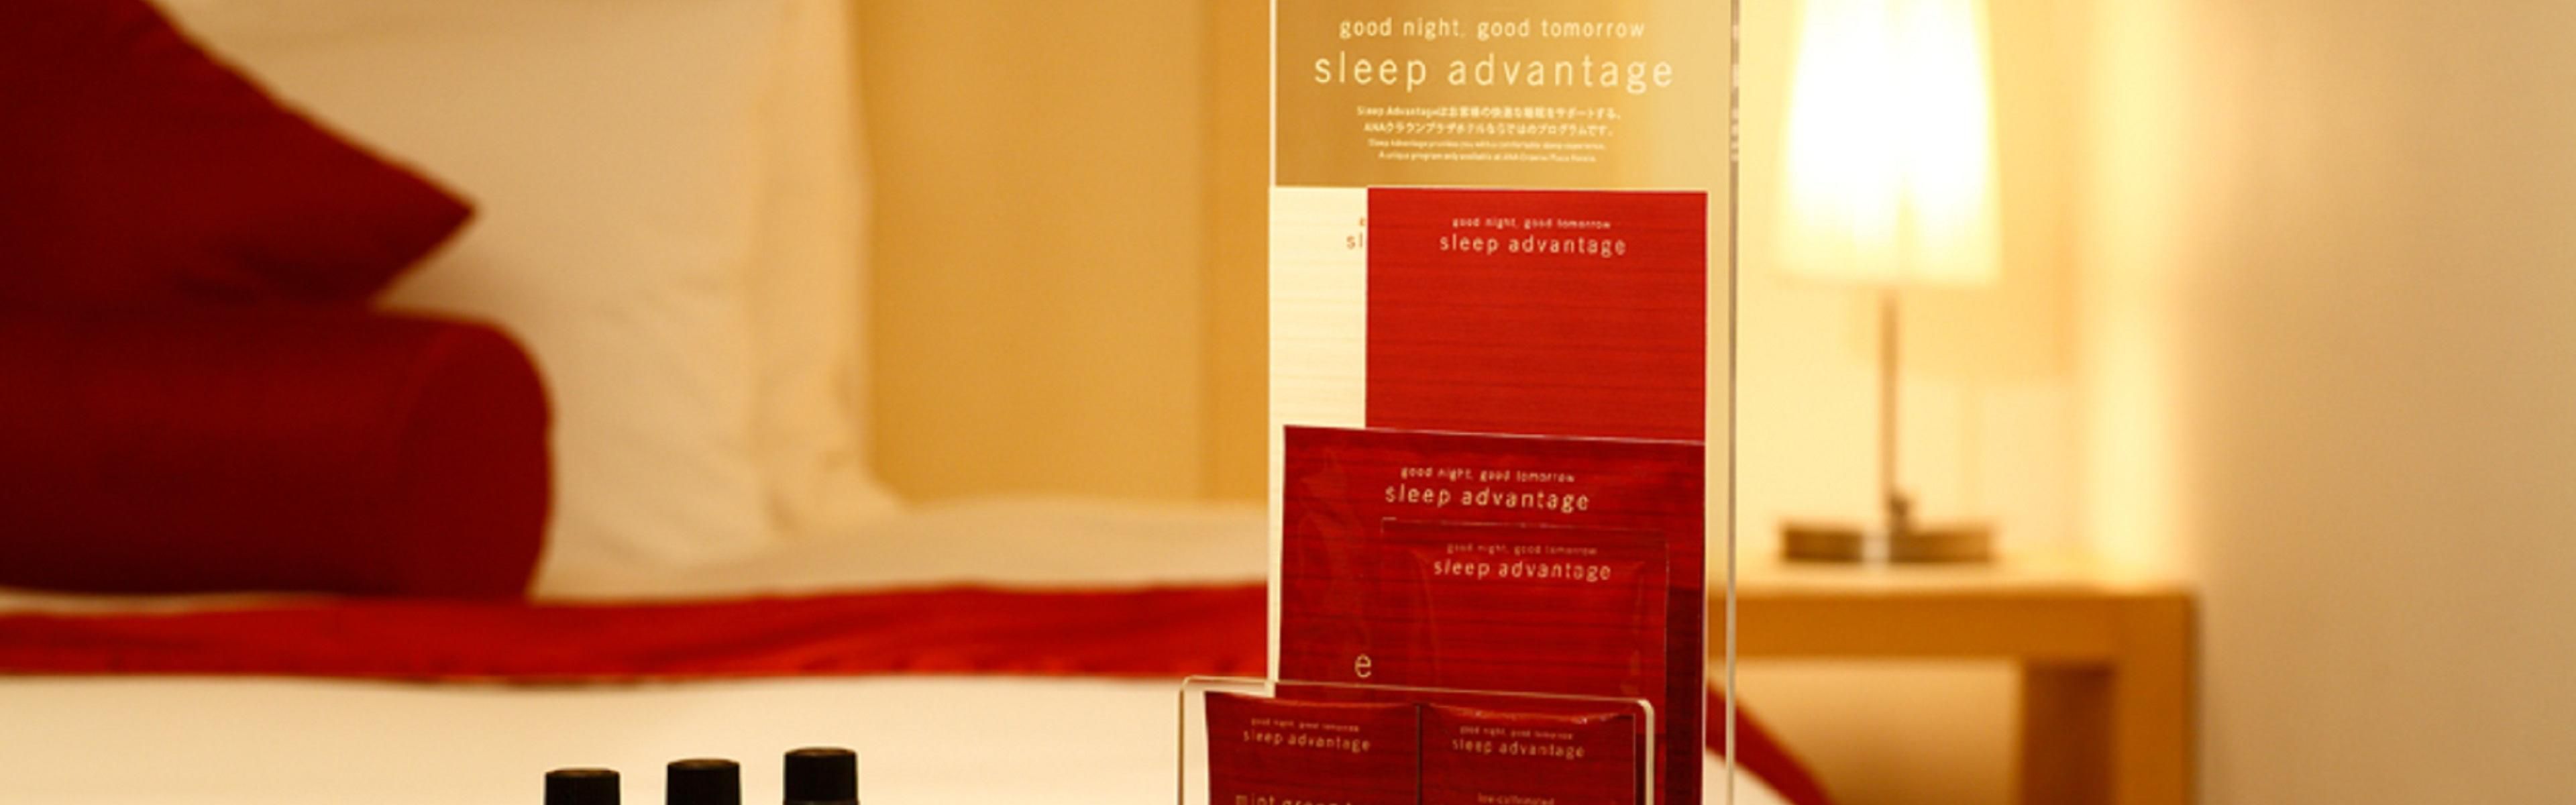 Sleep Advantage Program